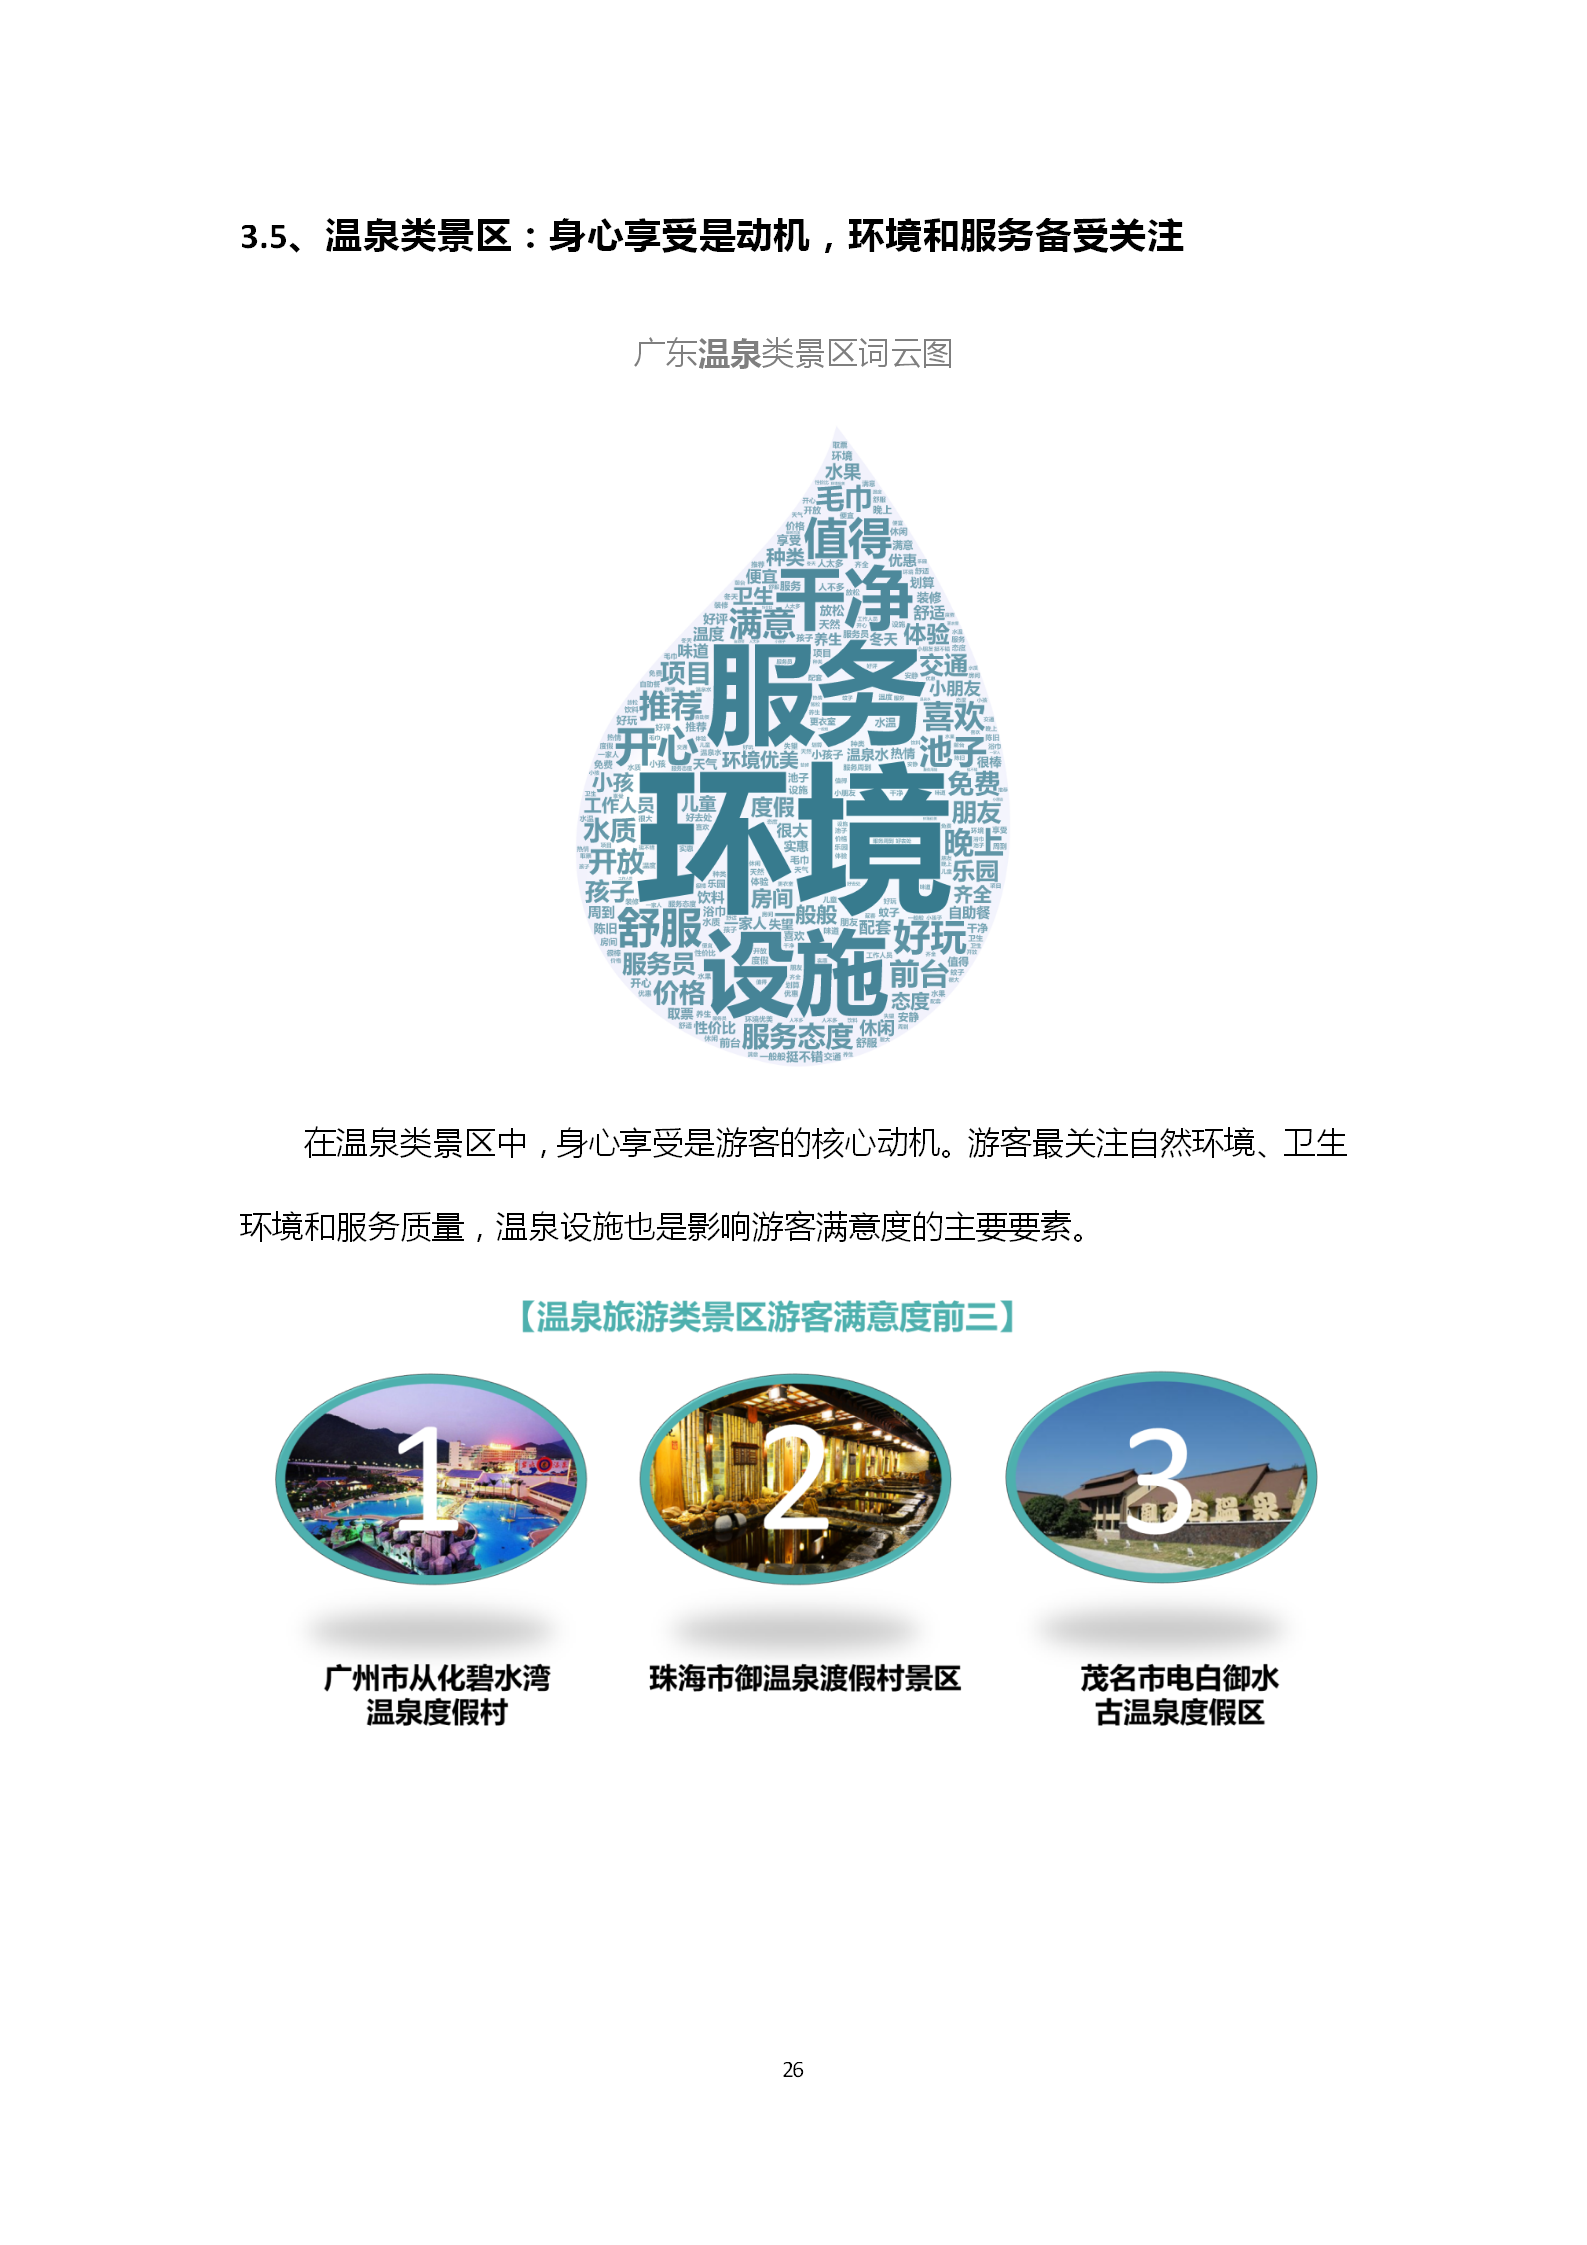 广东省旅游景区游客满意度大数据调查报告-2018年第三季度20181106_27